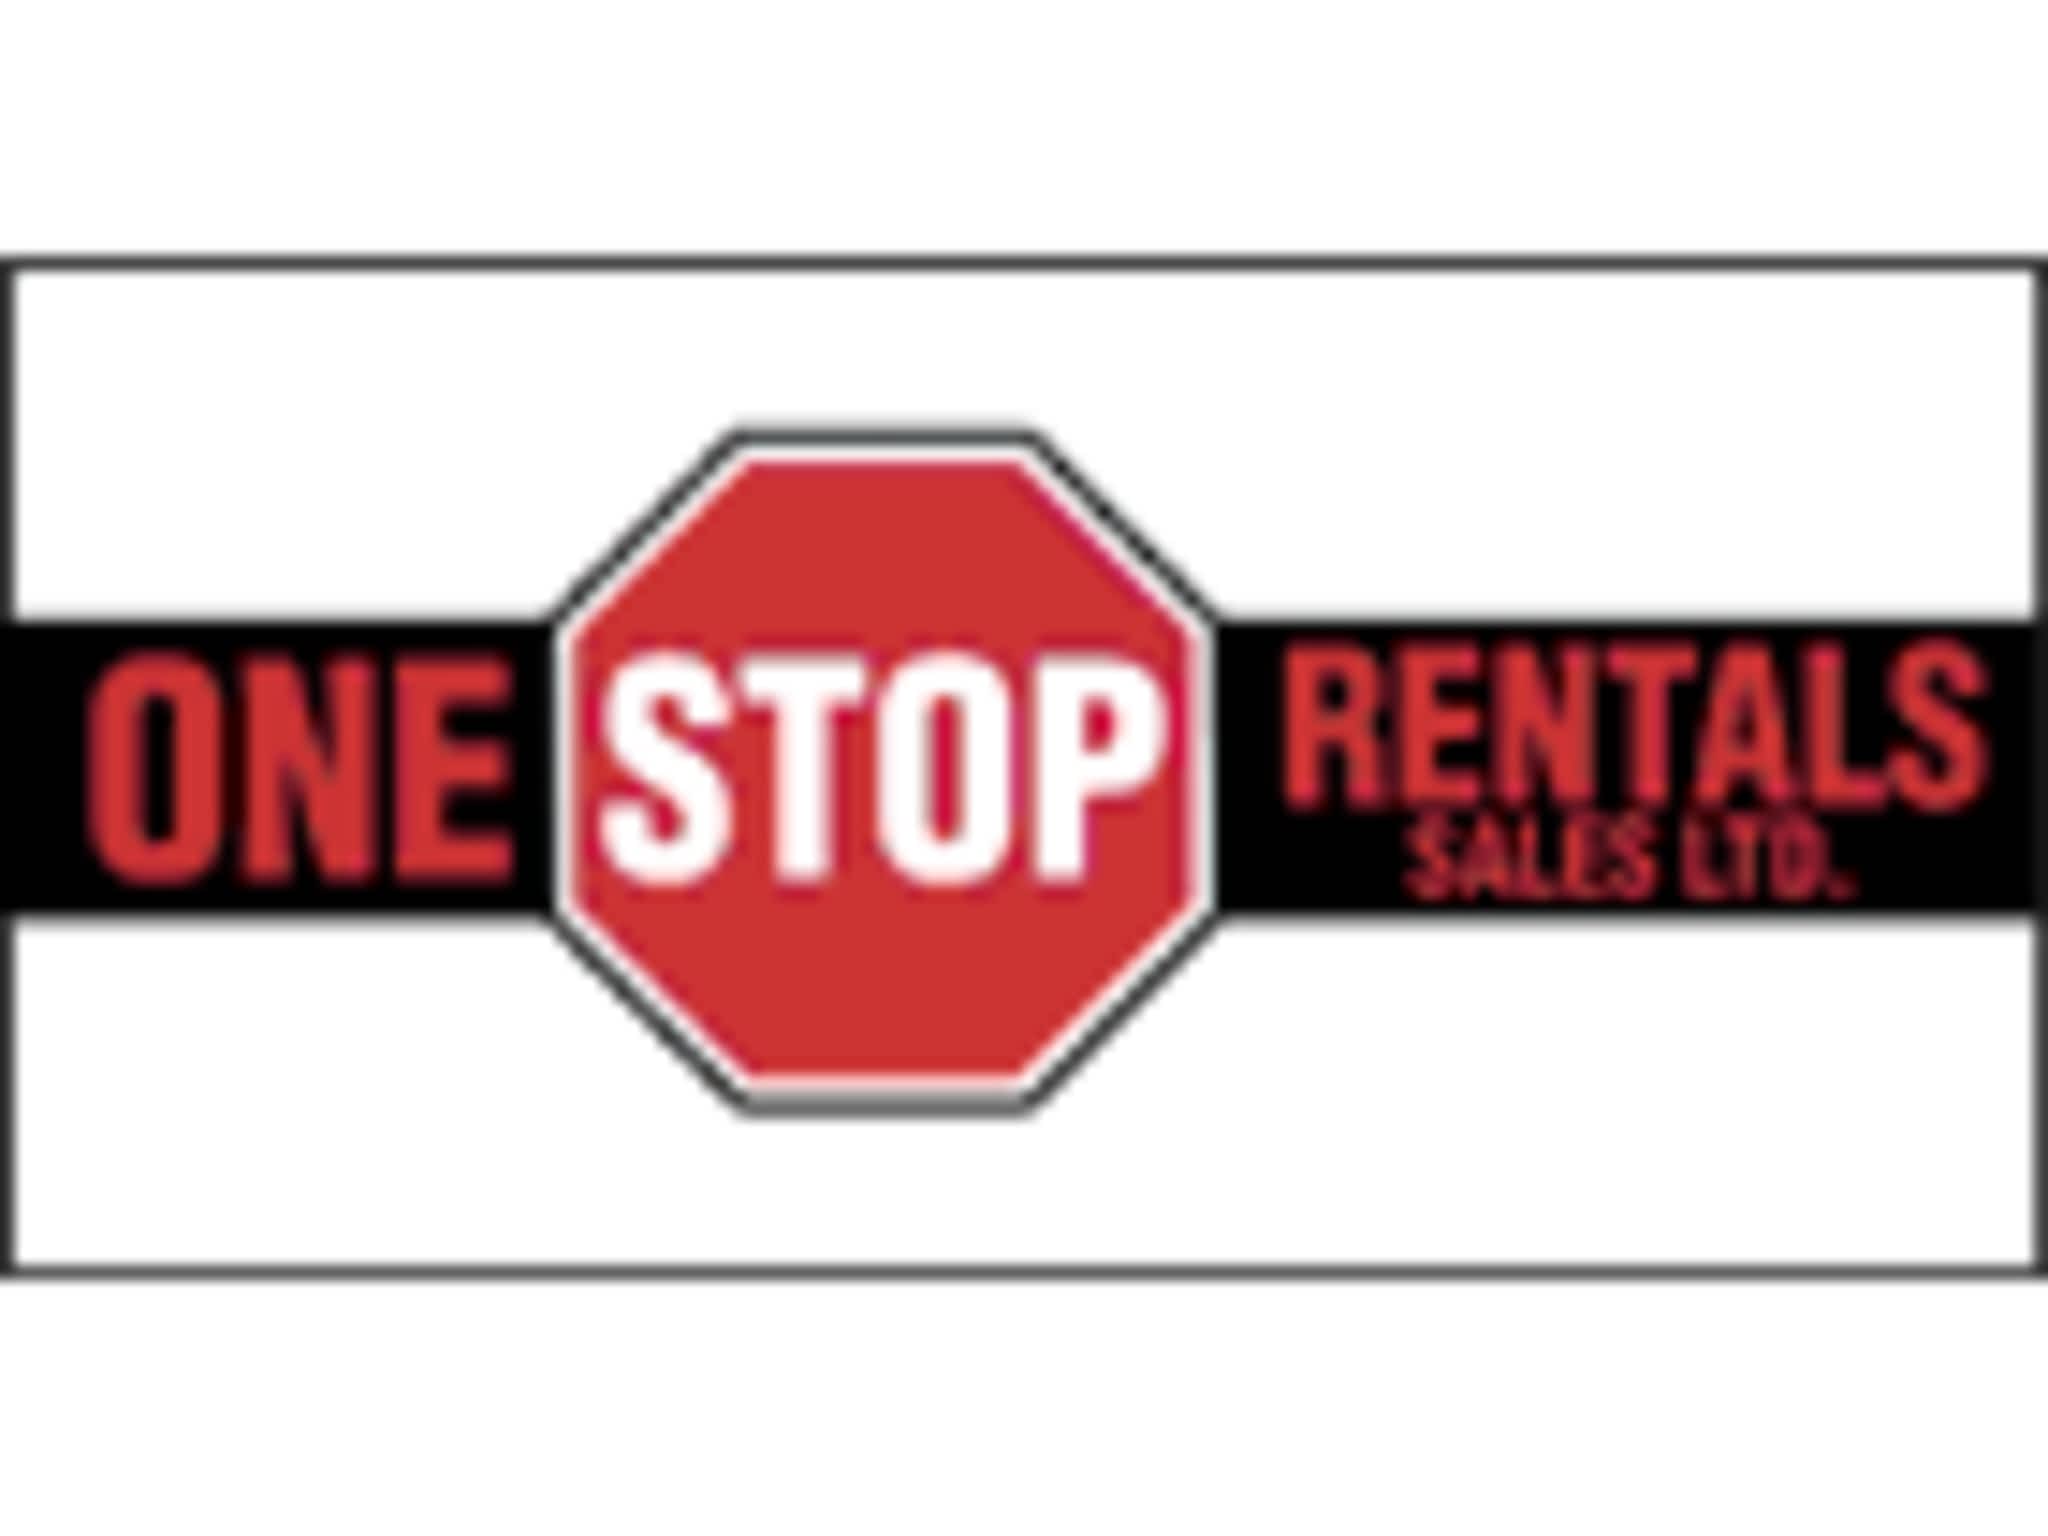 photo One Stop Rentals/Sales Ltd